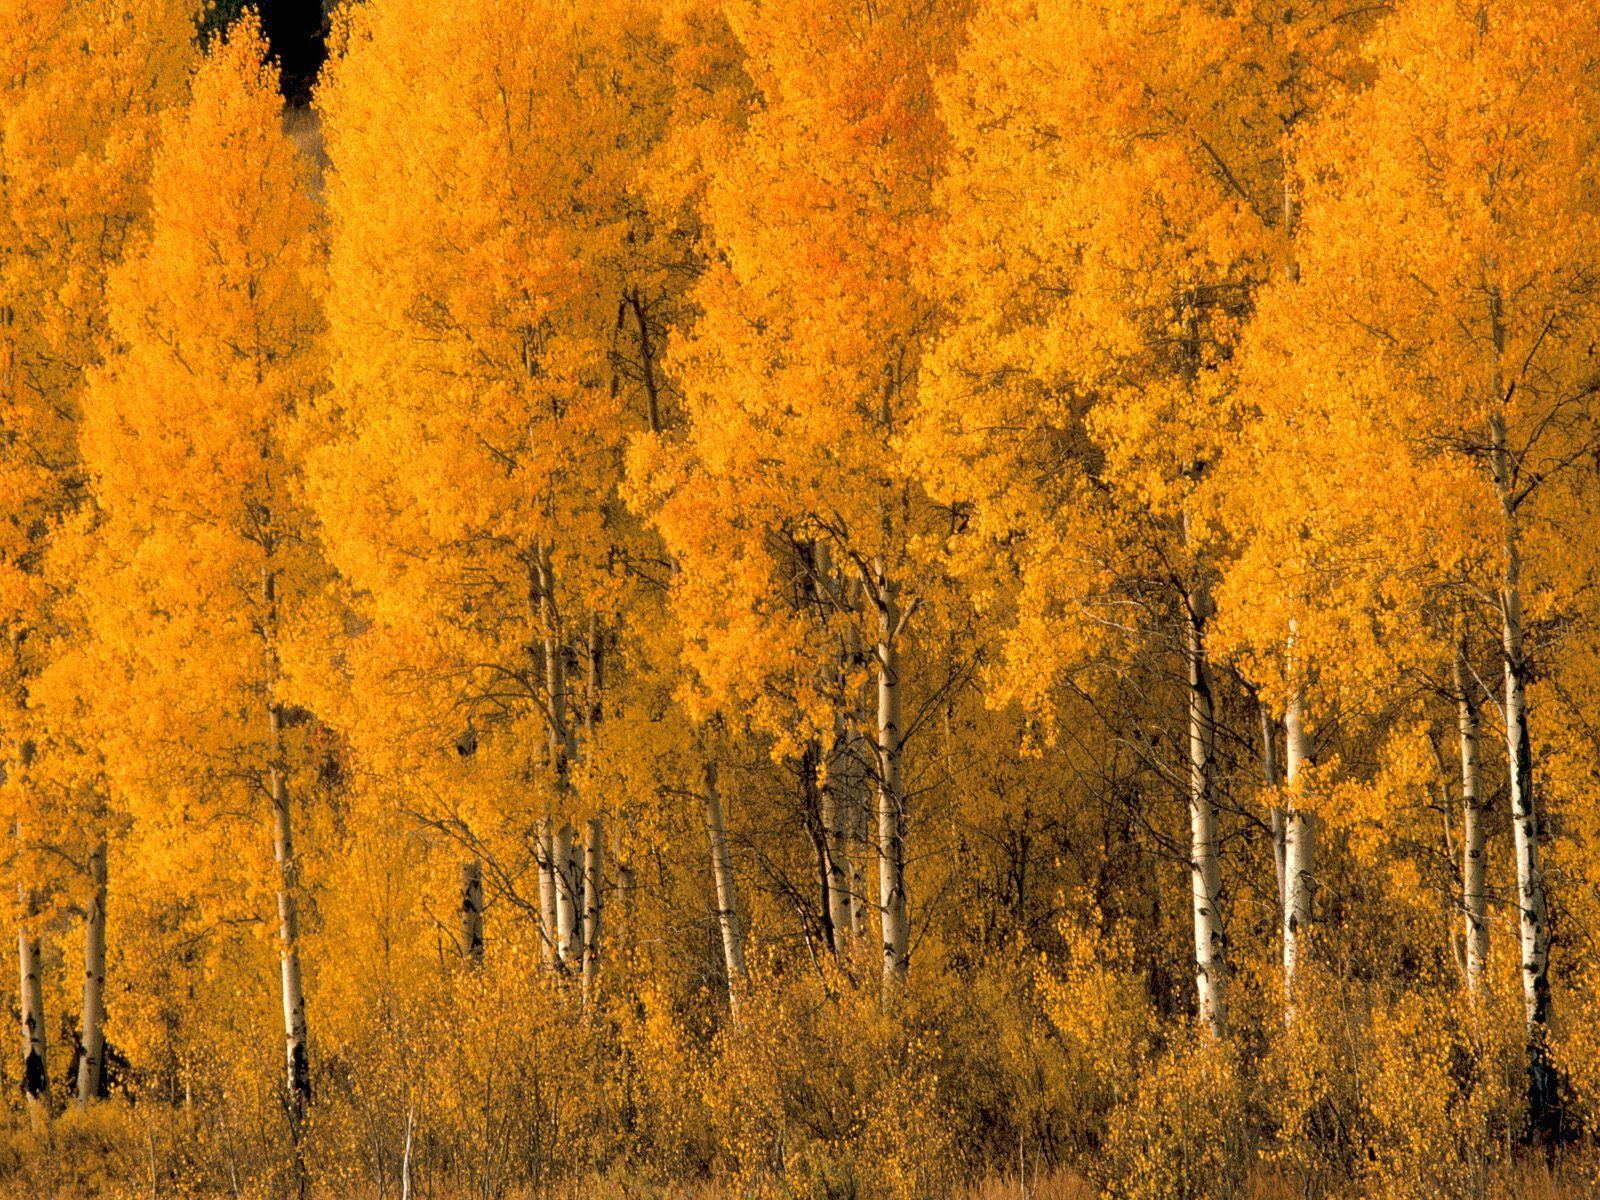 Aspen Trees, Montana. Autumn Beauty. Aspen trees, Autumn